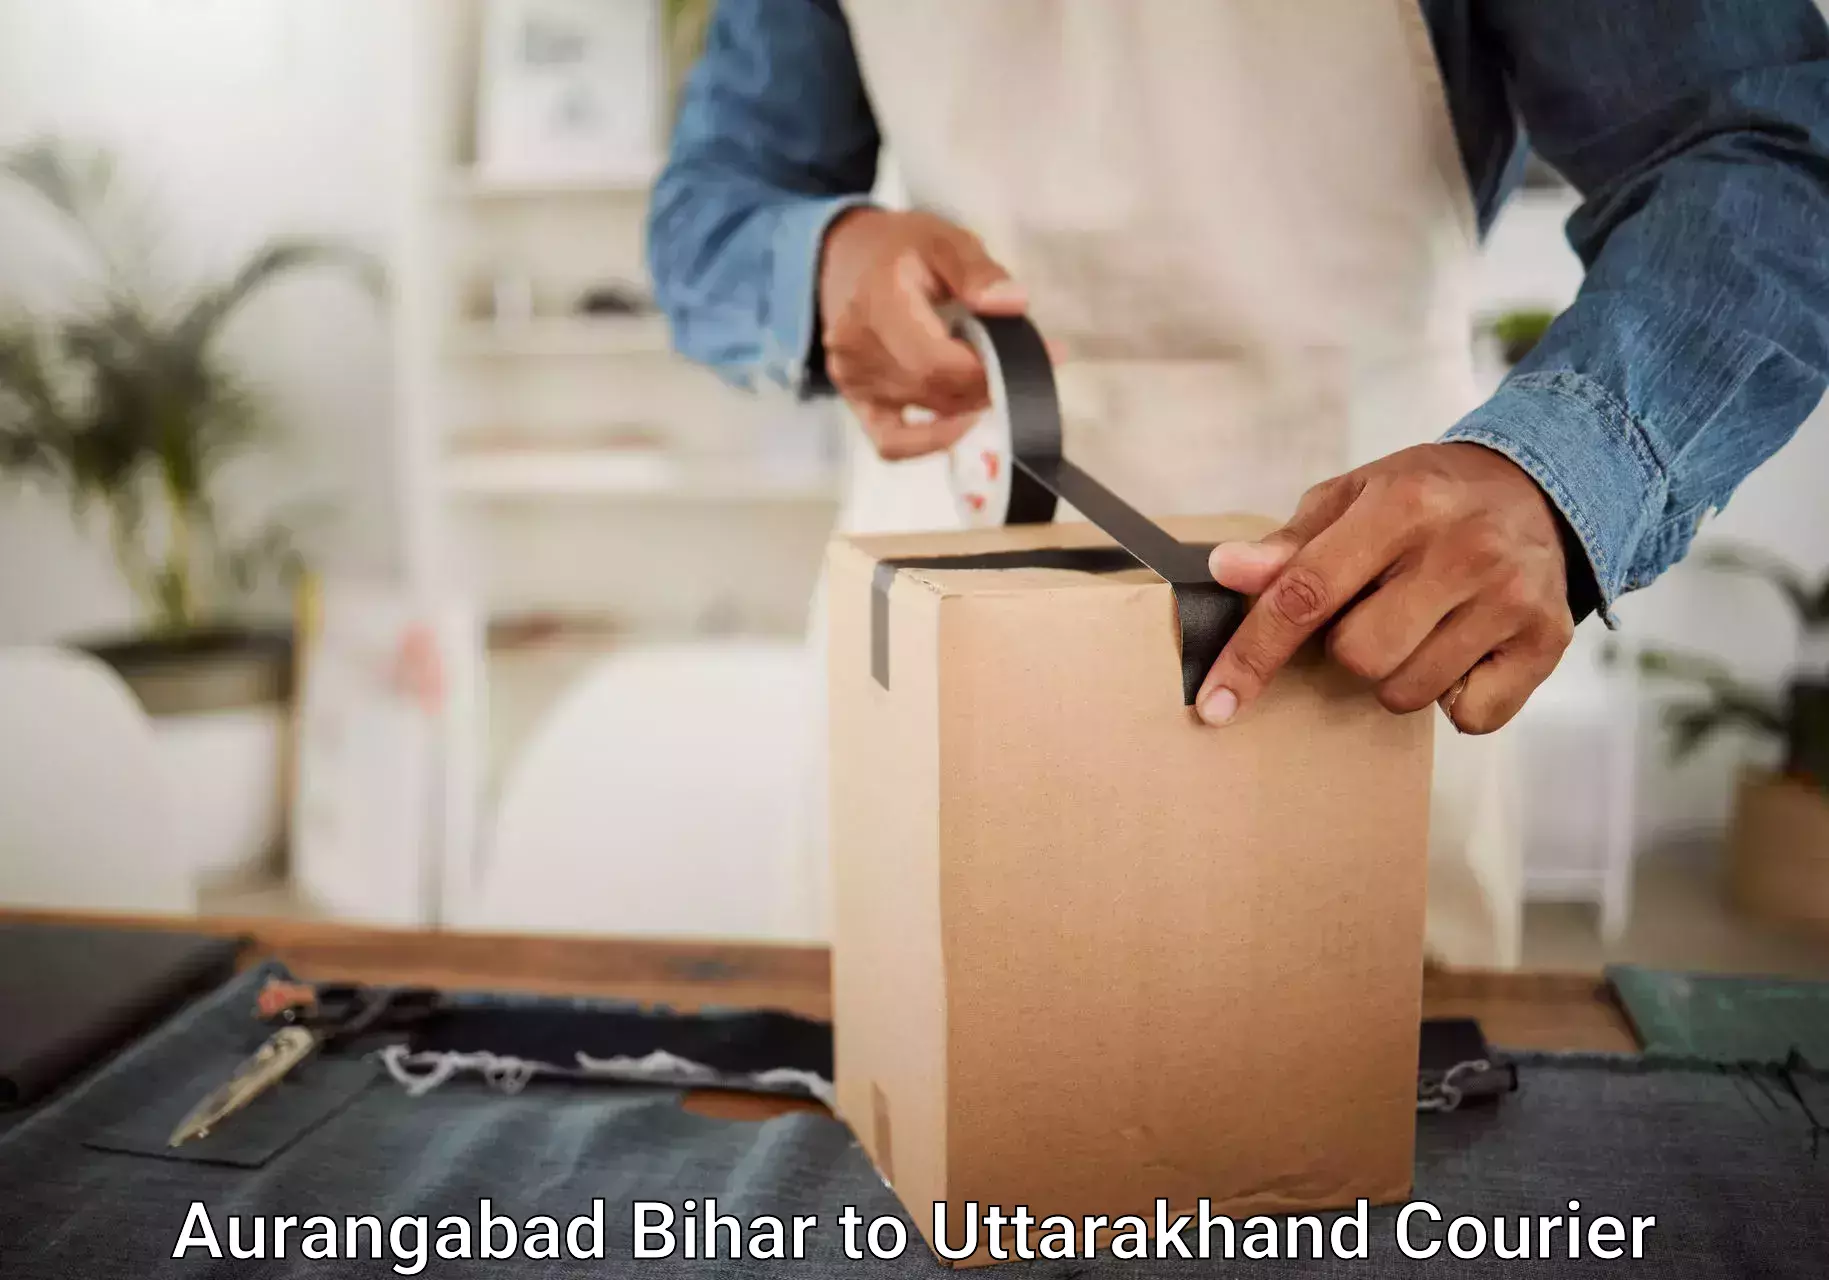 Door-to-door baggage service Aurangabad Bihar to Dehradun